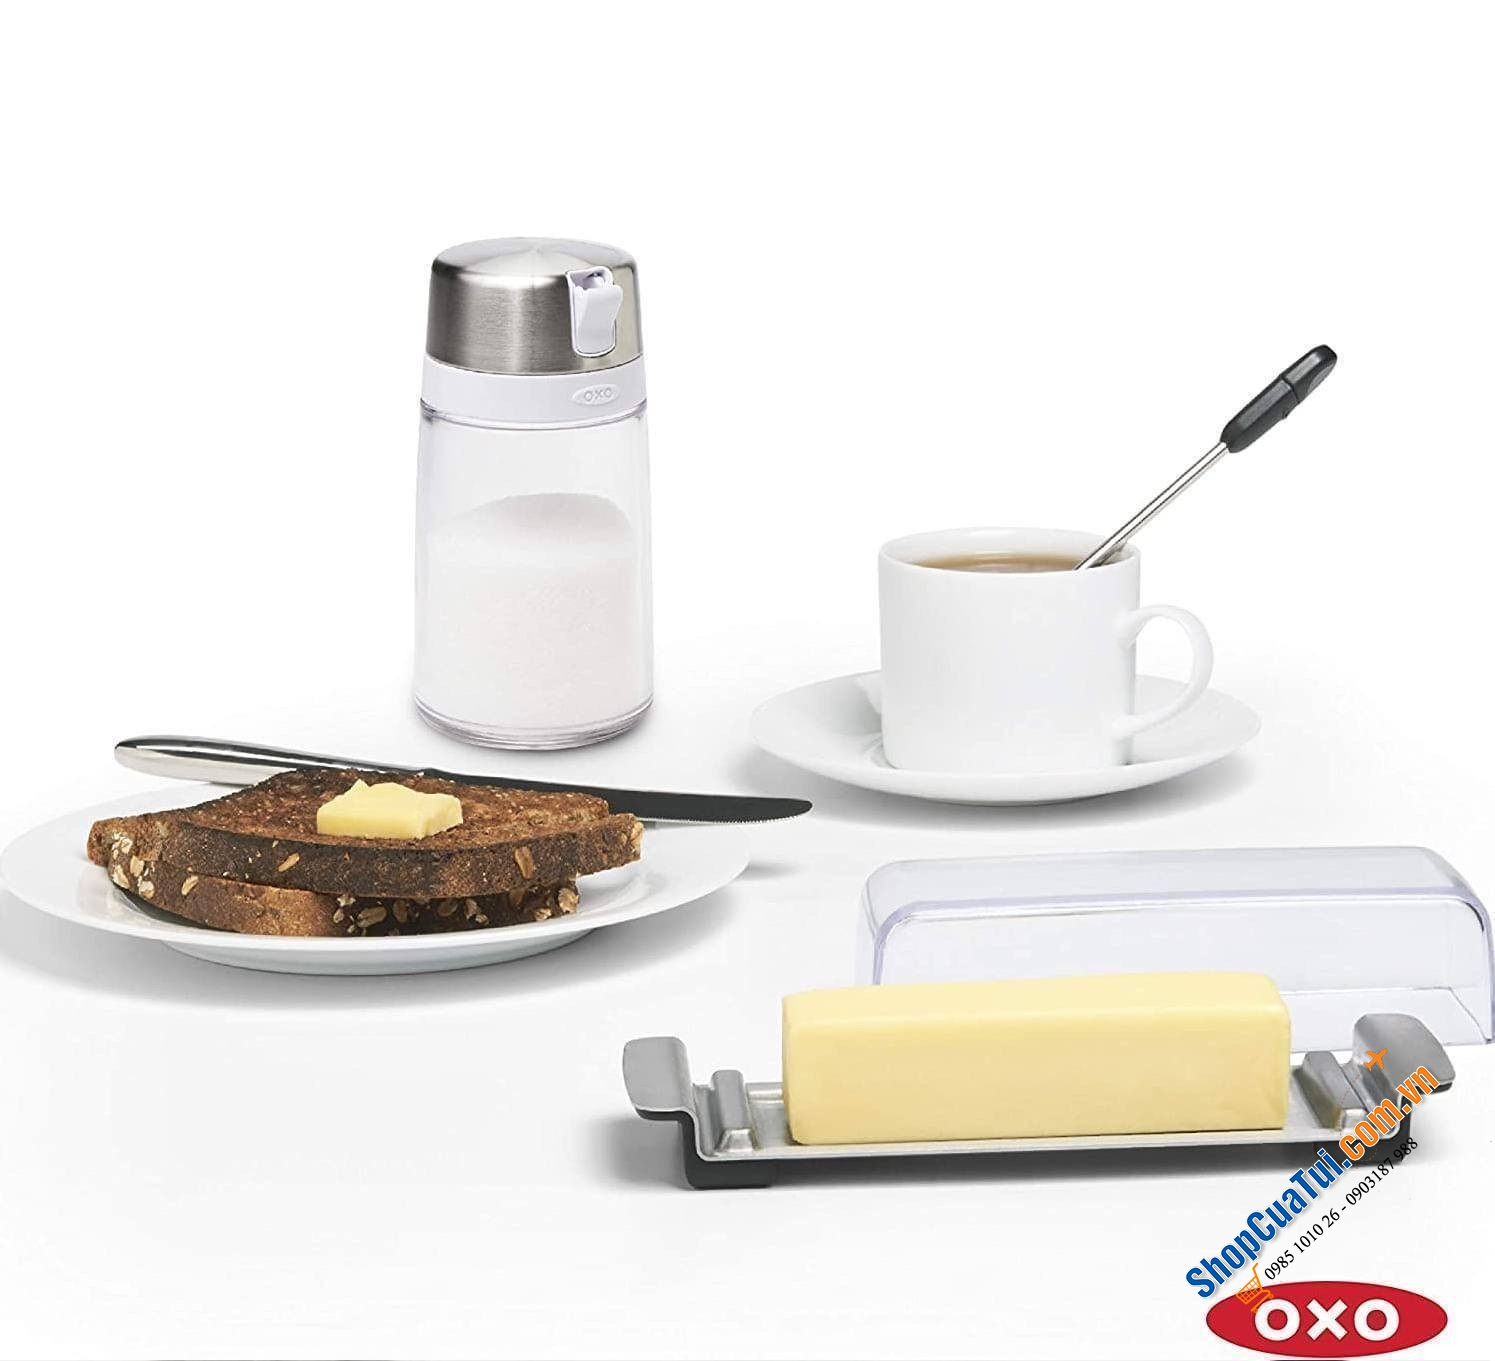 Hộp đựng đường Oxo 270ml tiện sử dụng trên bàn trà, dễ dàng kiểm soát lượng đường cần lấy